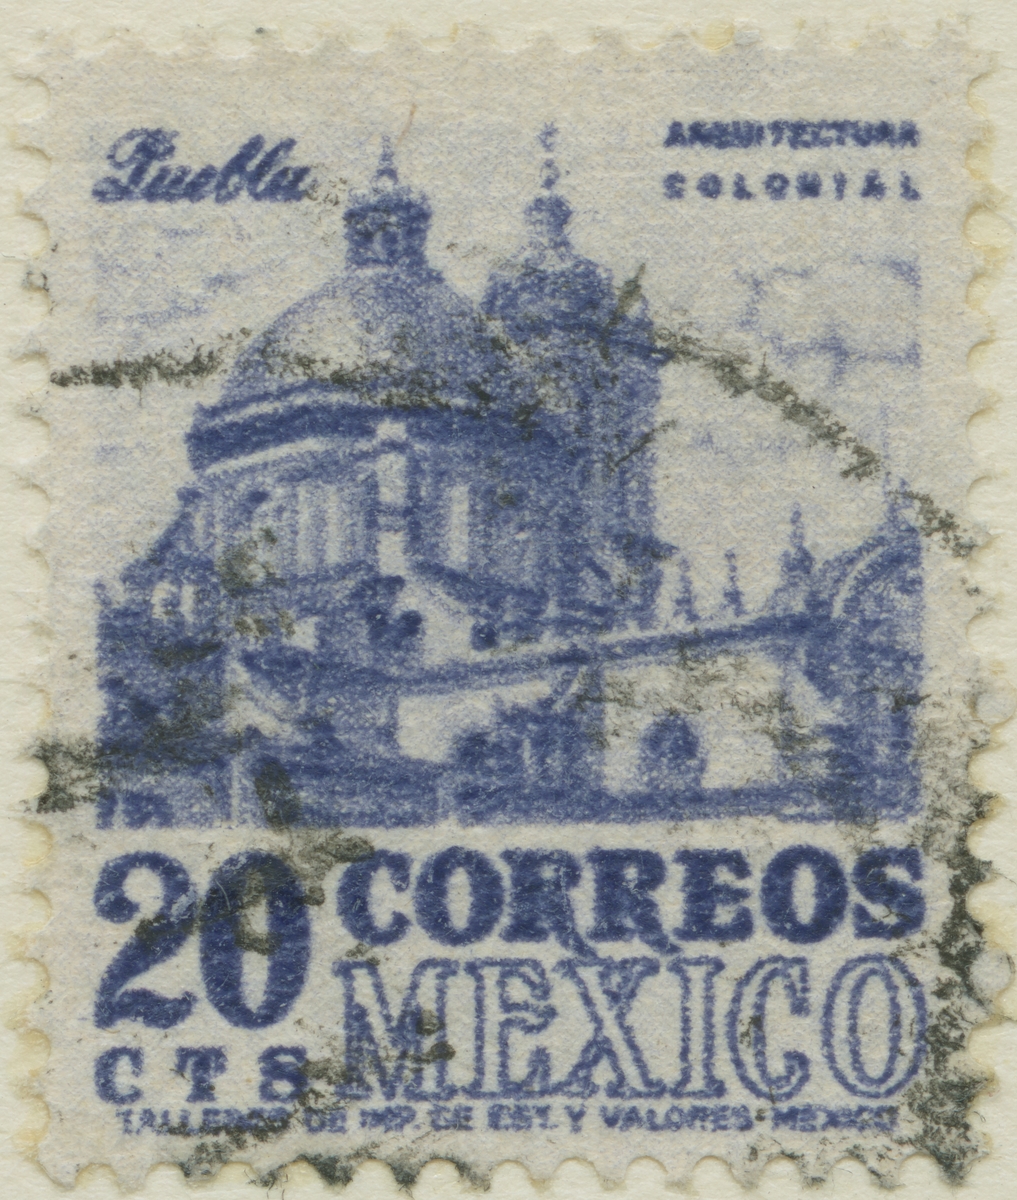 Frimärke ur Gösta Bodmans filatelistiska motivsamling, påbörjad 1950.
Frimärke från Maxico, 1950. Motiv av kyrkan i Puebla.